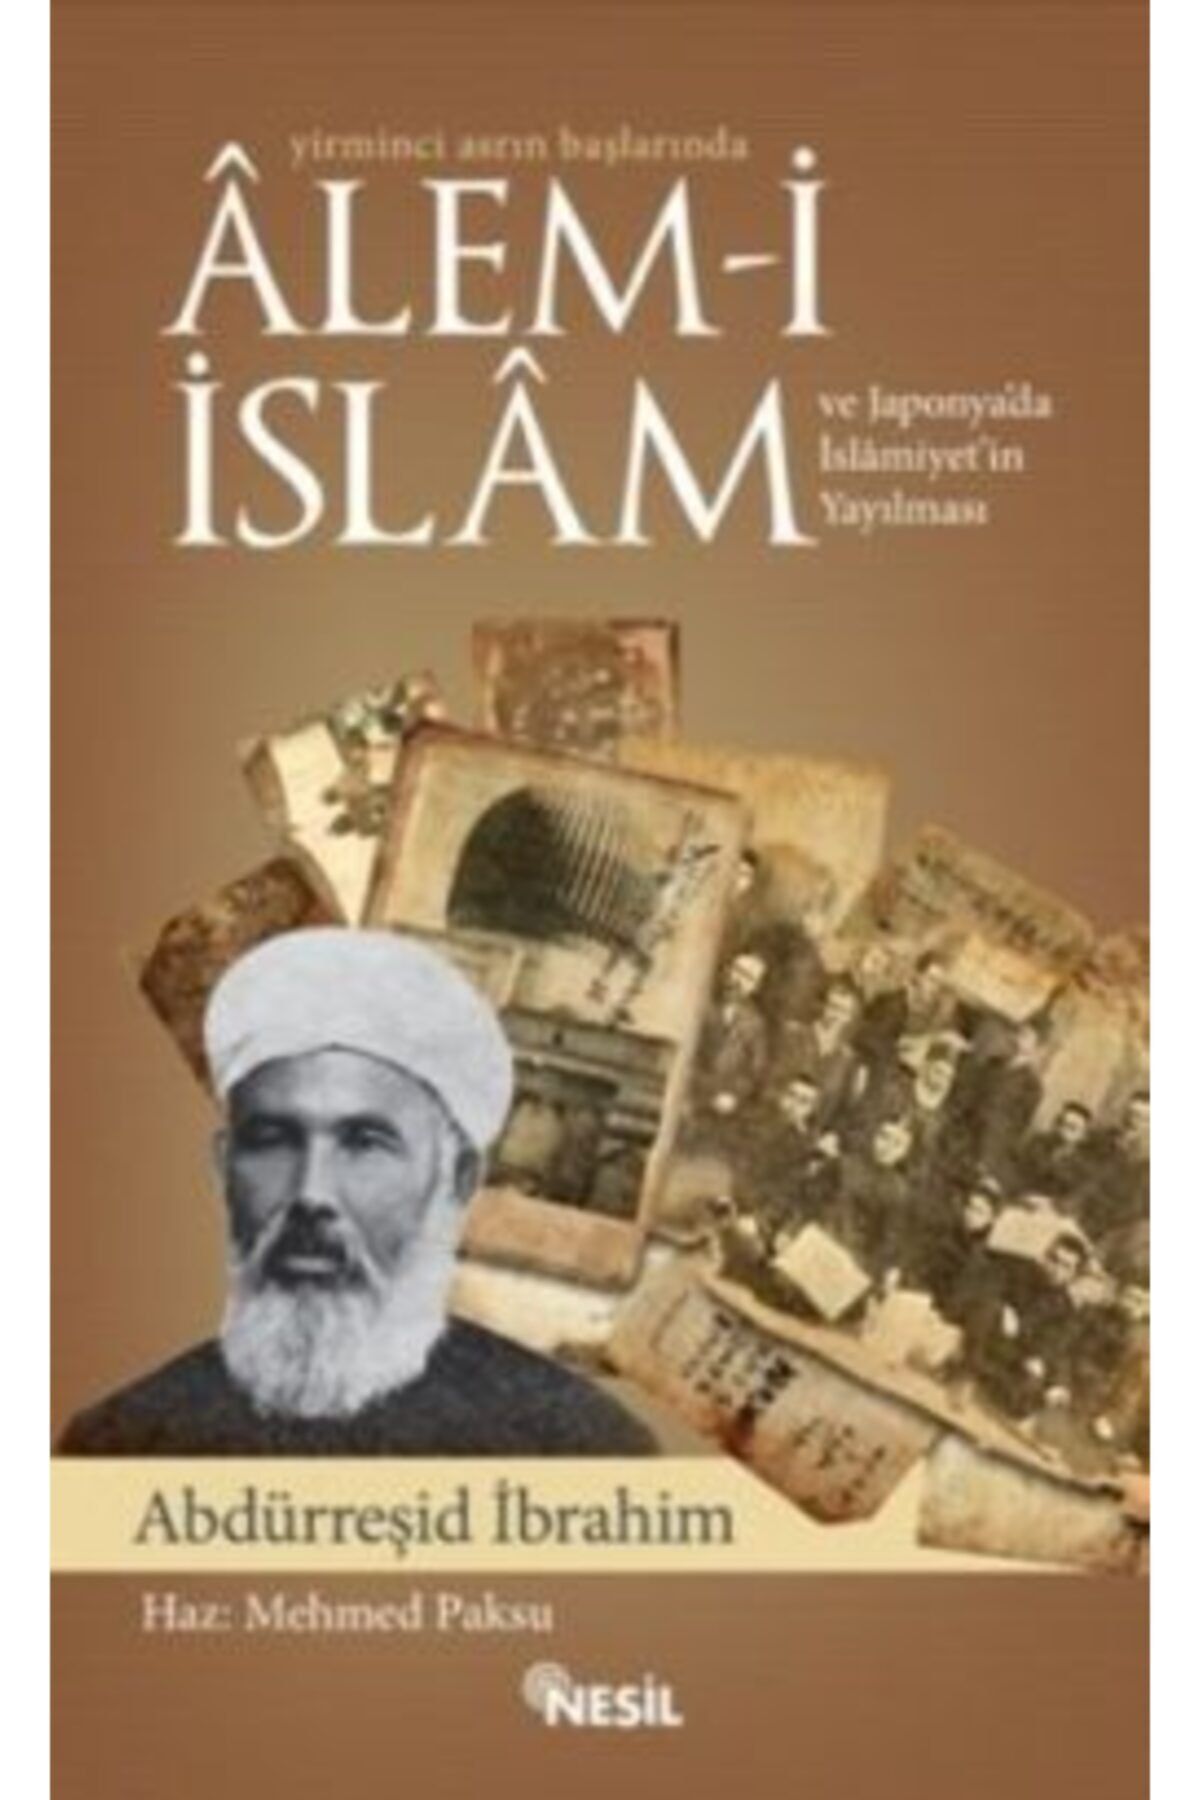 Nesil Yayınları Yirminci Asrın Başlarında Alem-i Islam Ve Japonya’da Islamiyet’in Yayılması